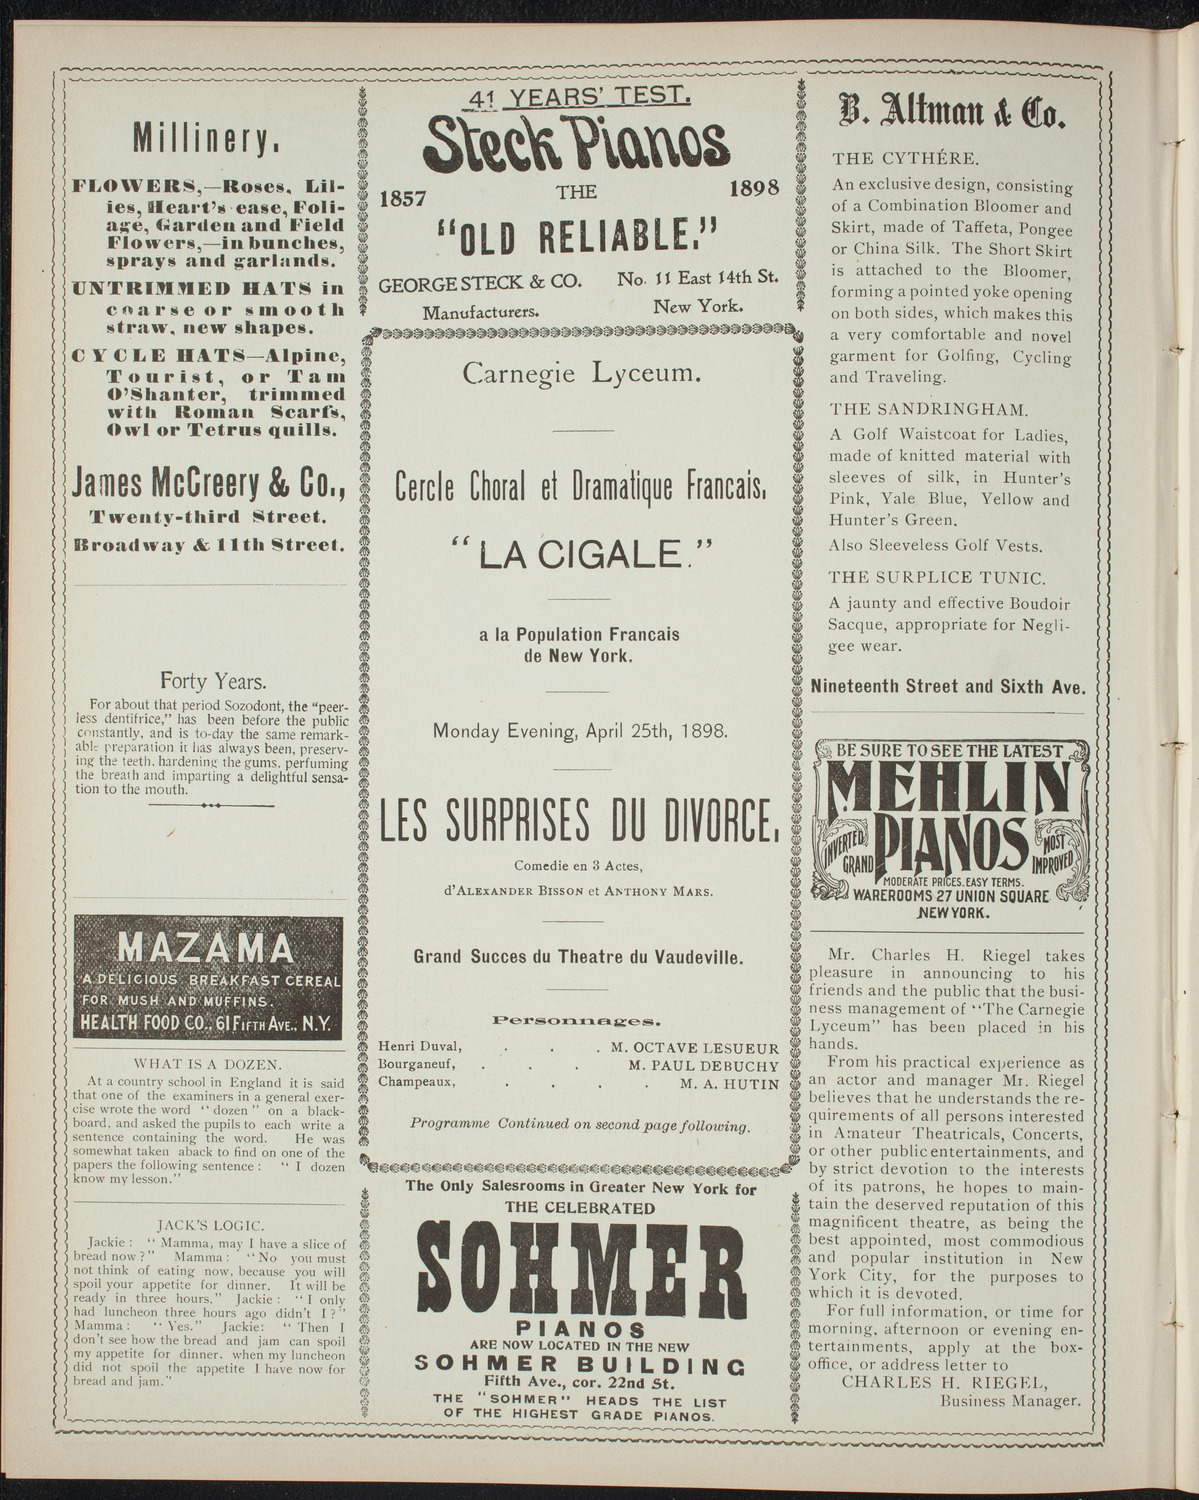 Cercle Choral et Dramatique Francais "La Cigale", April 25, 1898, program page 4